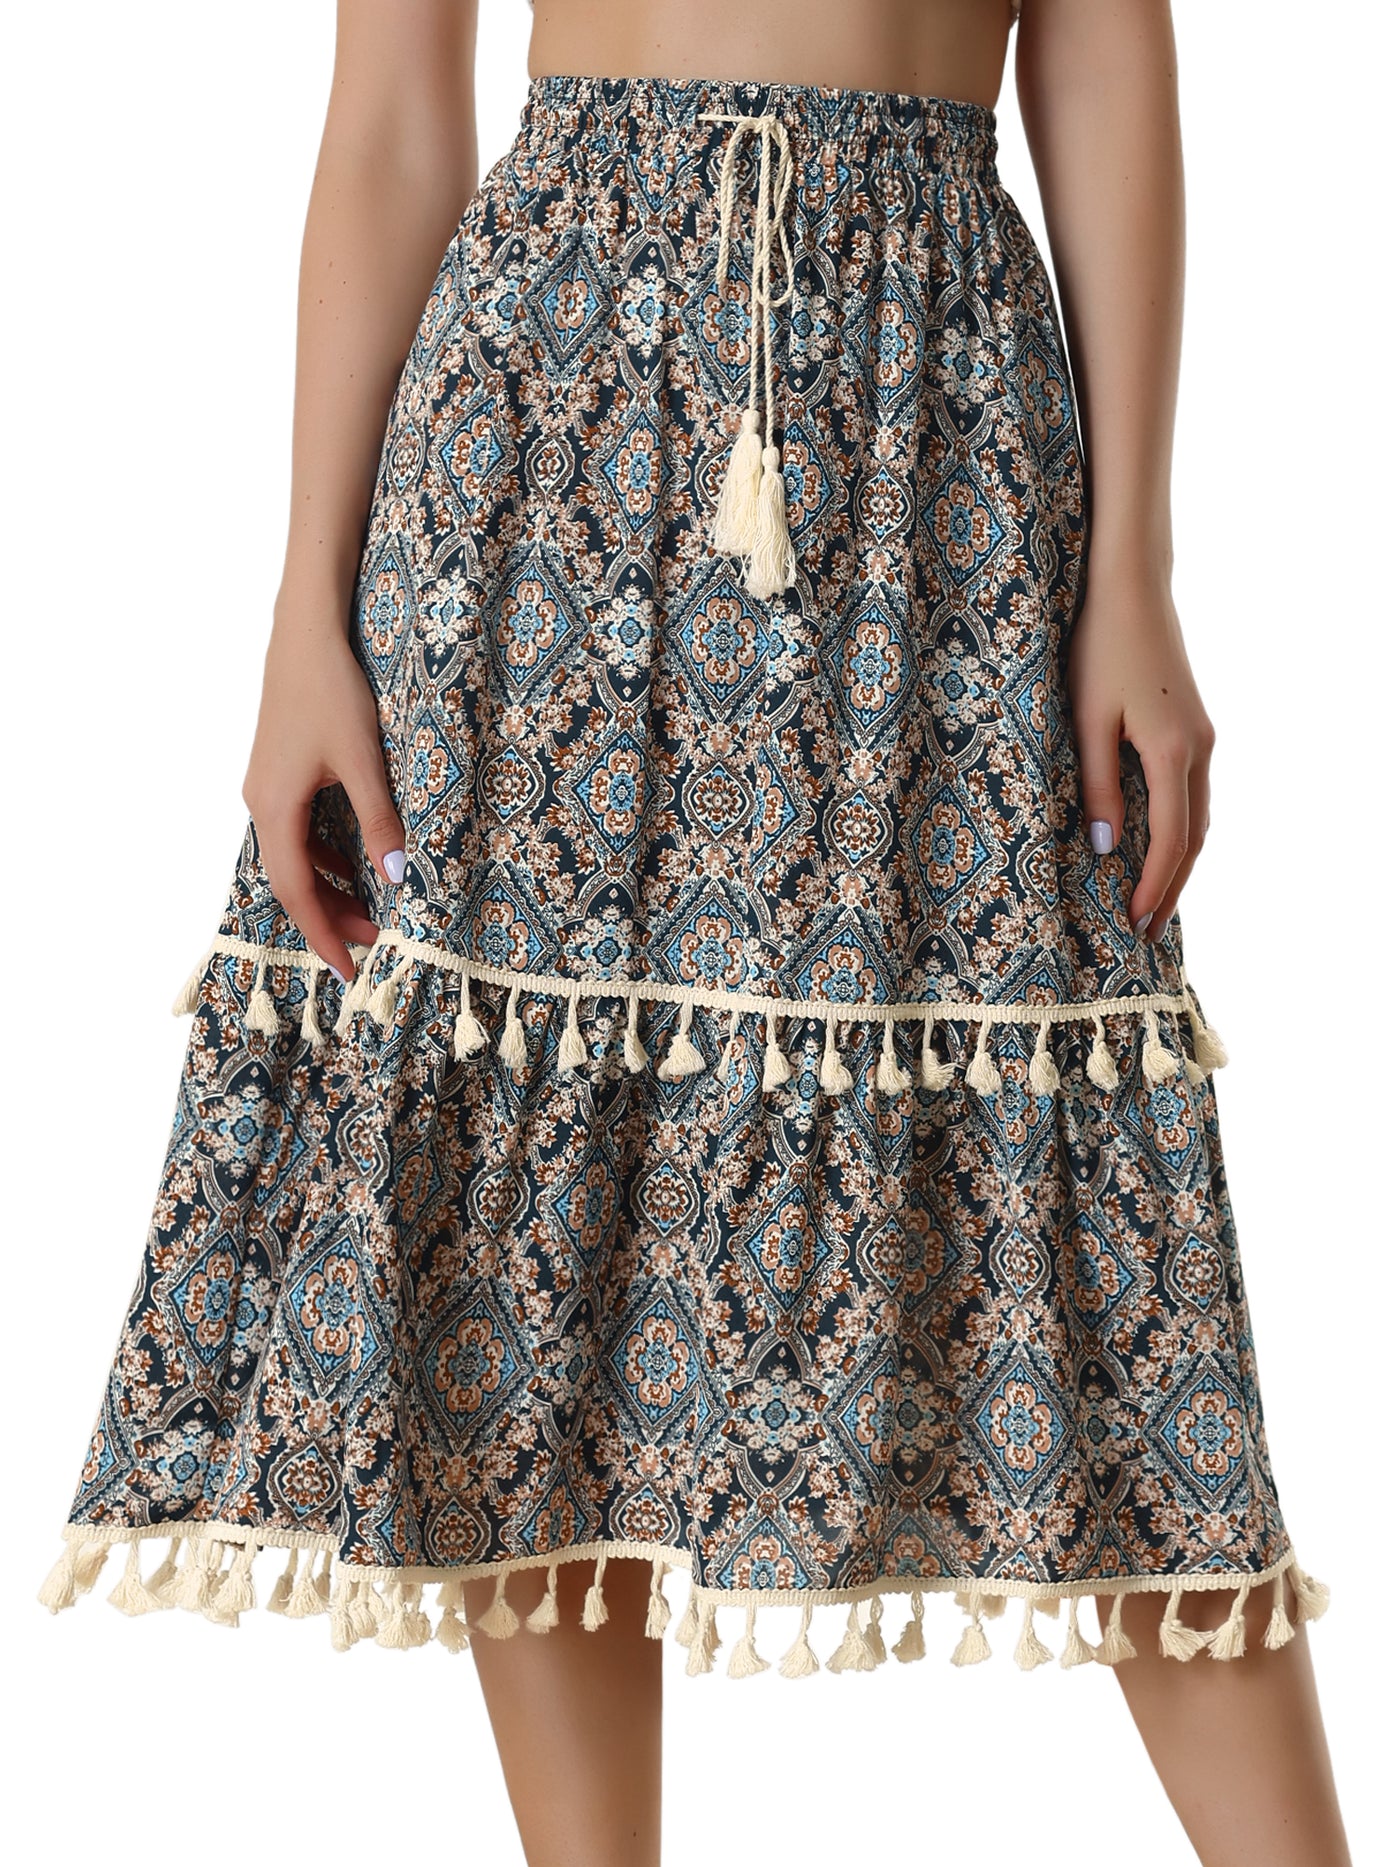 Allegra K Women's Tiered Midi Skirts Elastic Waist Tassel Fringe Boho Skirt